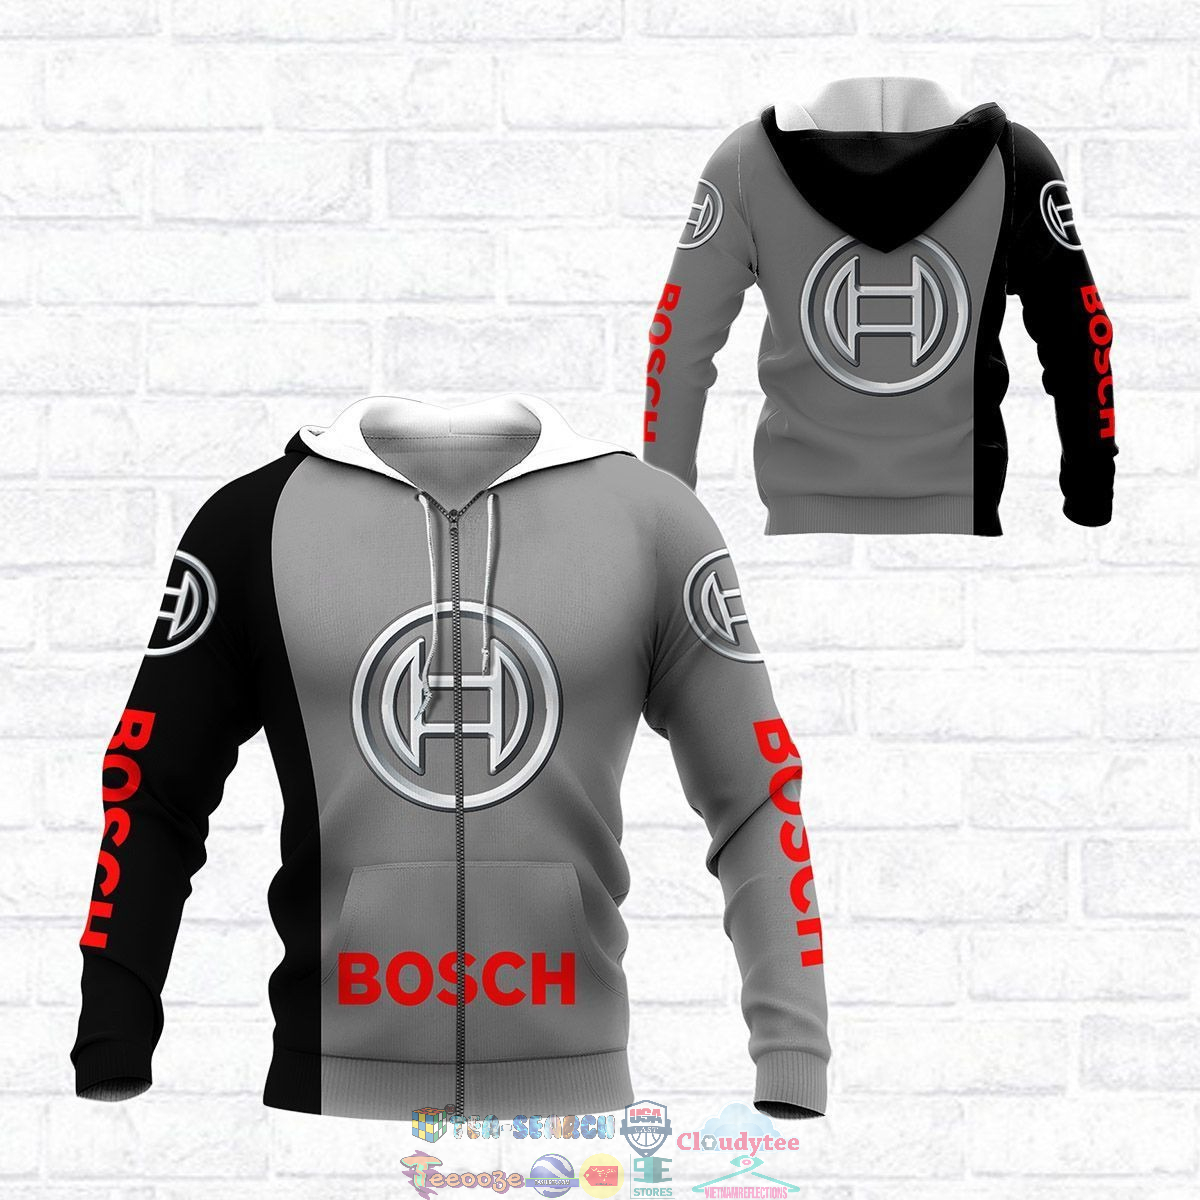 Robert Bosch GmbH ver 2 3D hoodie and t-shirt